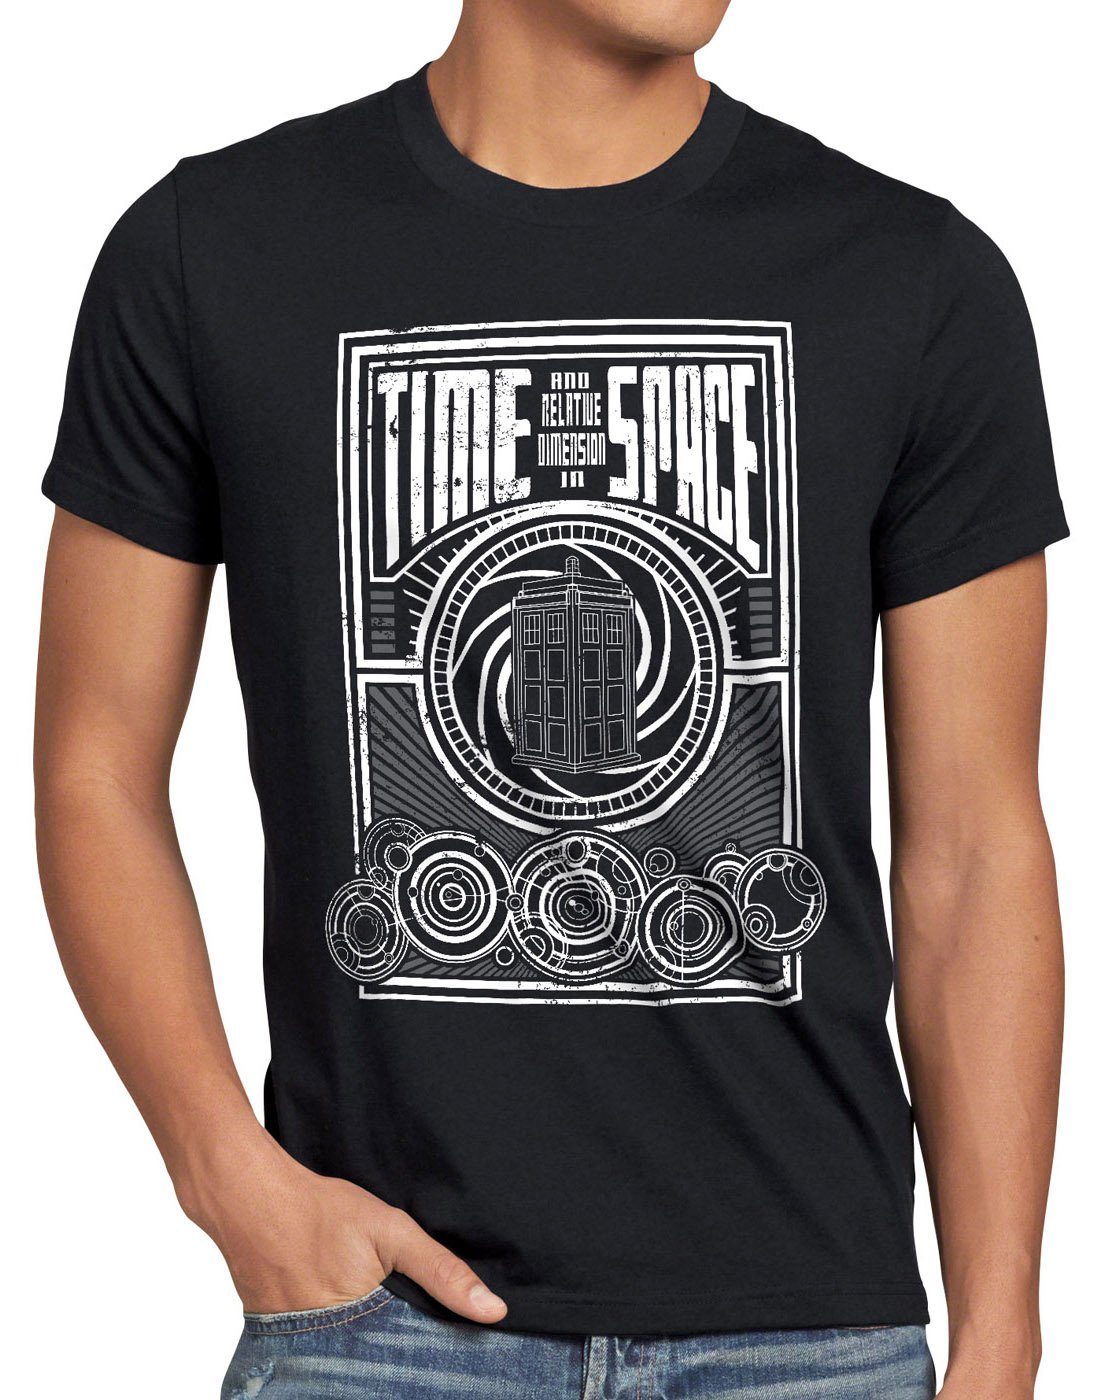 style3 schwarz meets Time T-Shirt timelord notrufzelle zeitreise Print-Shirt Herren Space